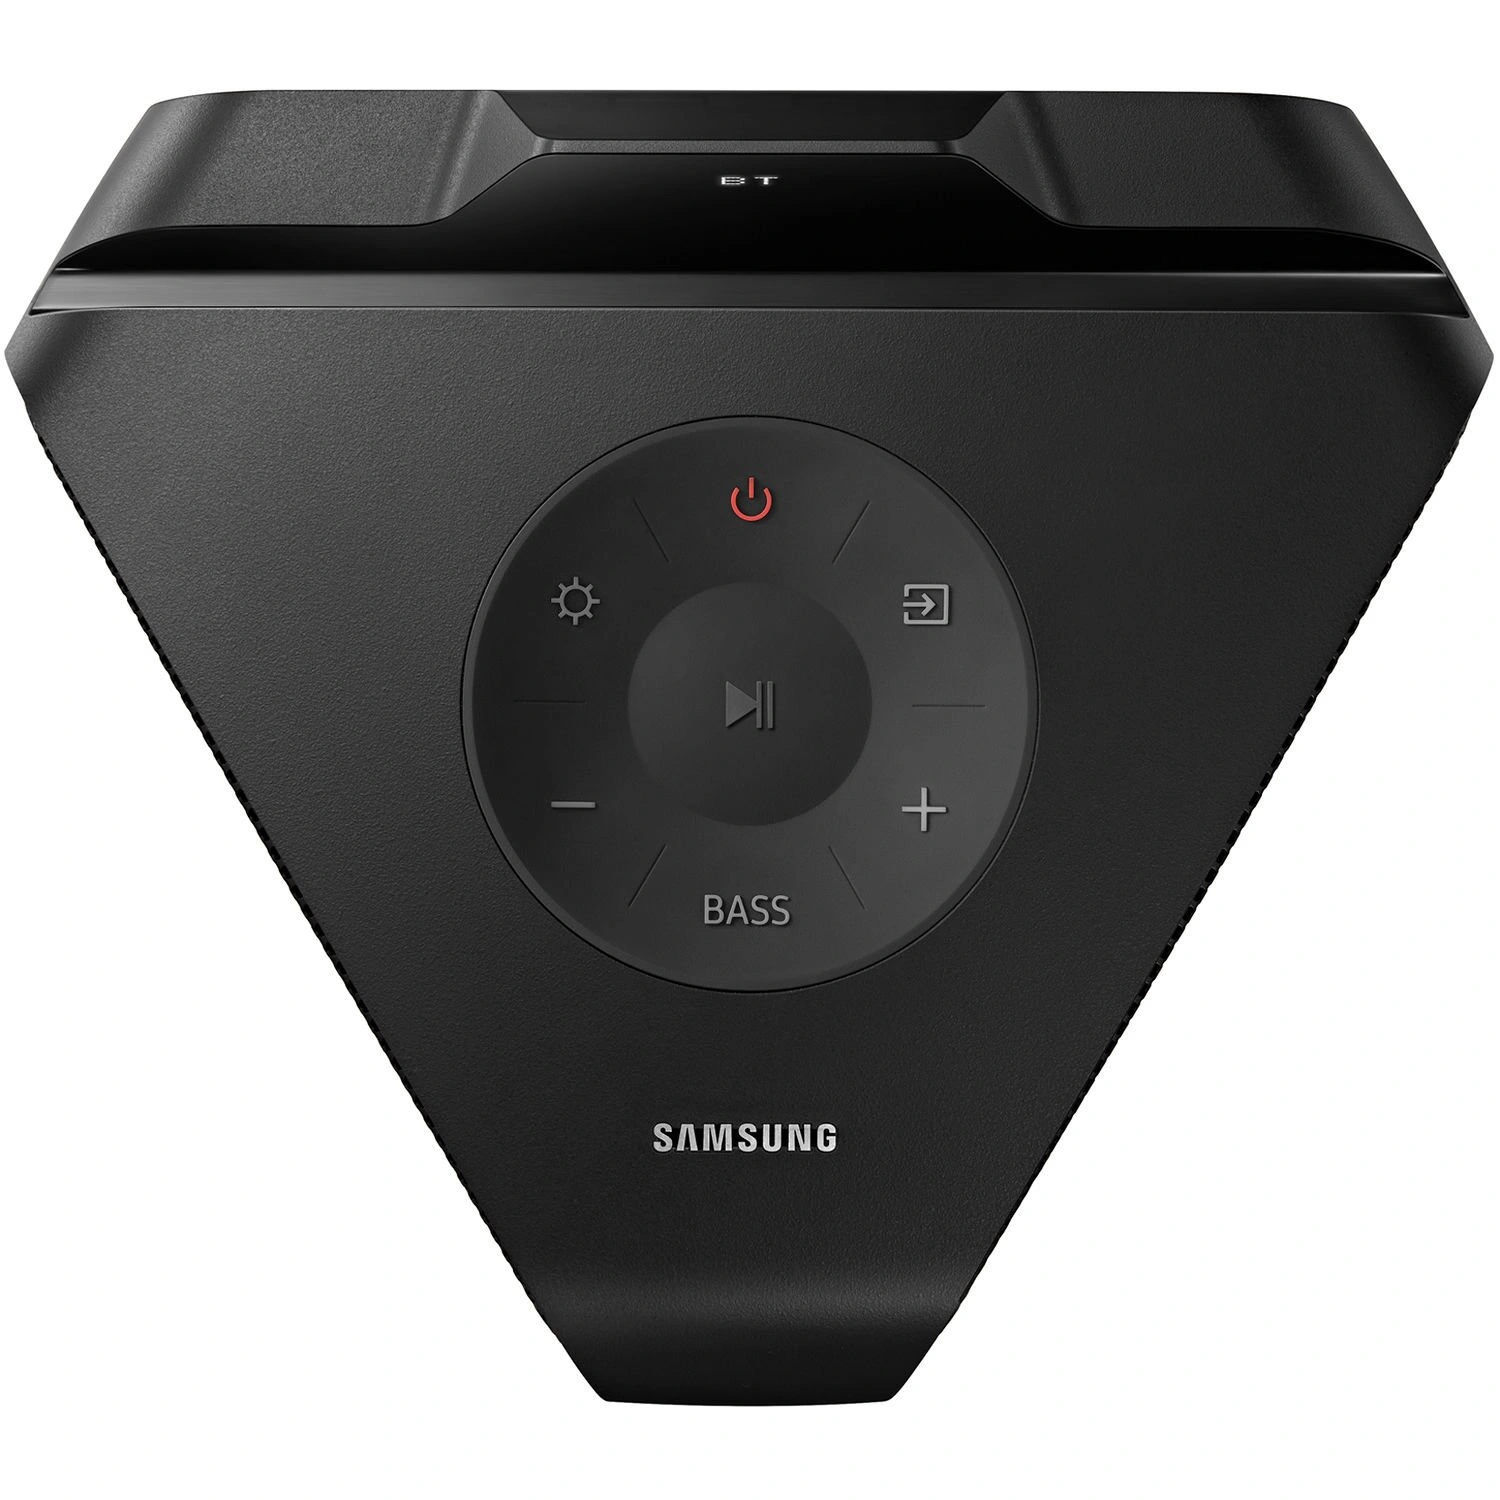 Музыкальная колонка самсунг. Колонка Samsung MX-t50. Акустическая система Samsung MX-t40. Аудиосистема Sound Tower MX-t50. Аудиосистема Samsung MX-t70.